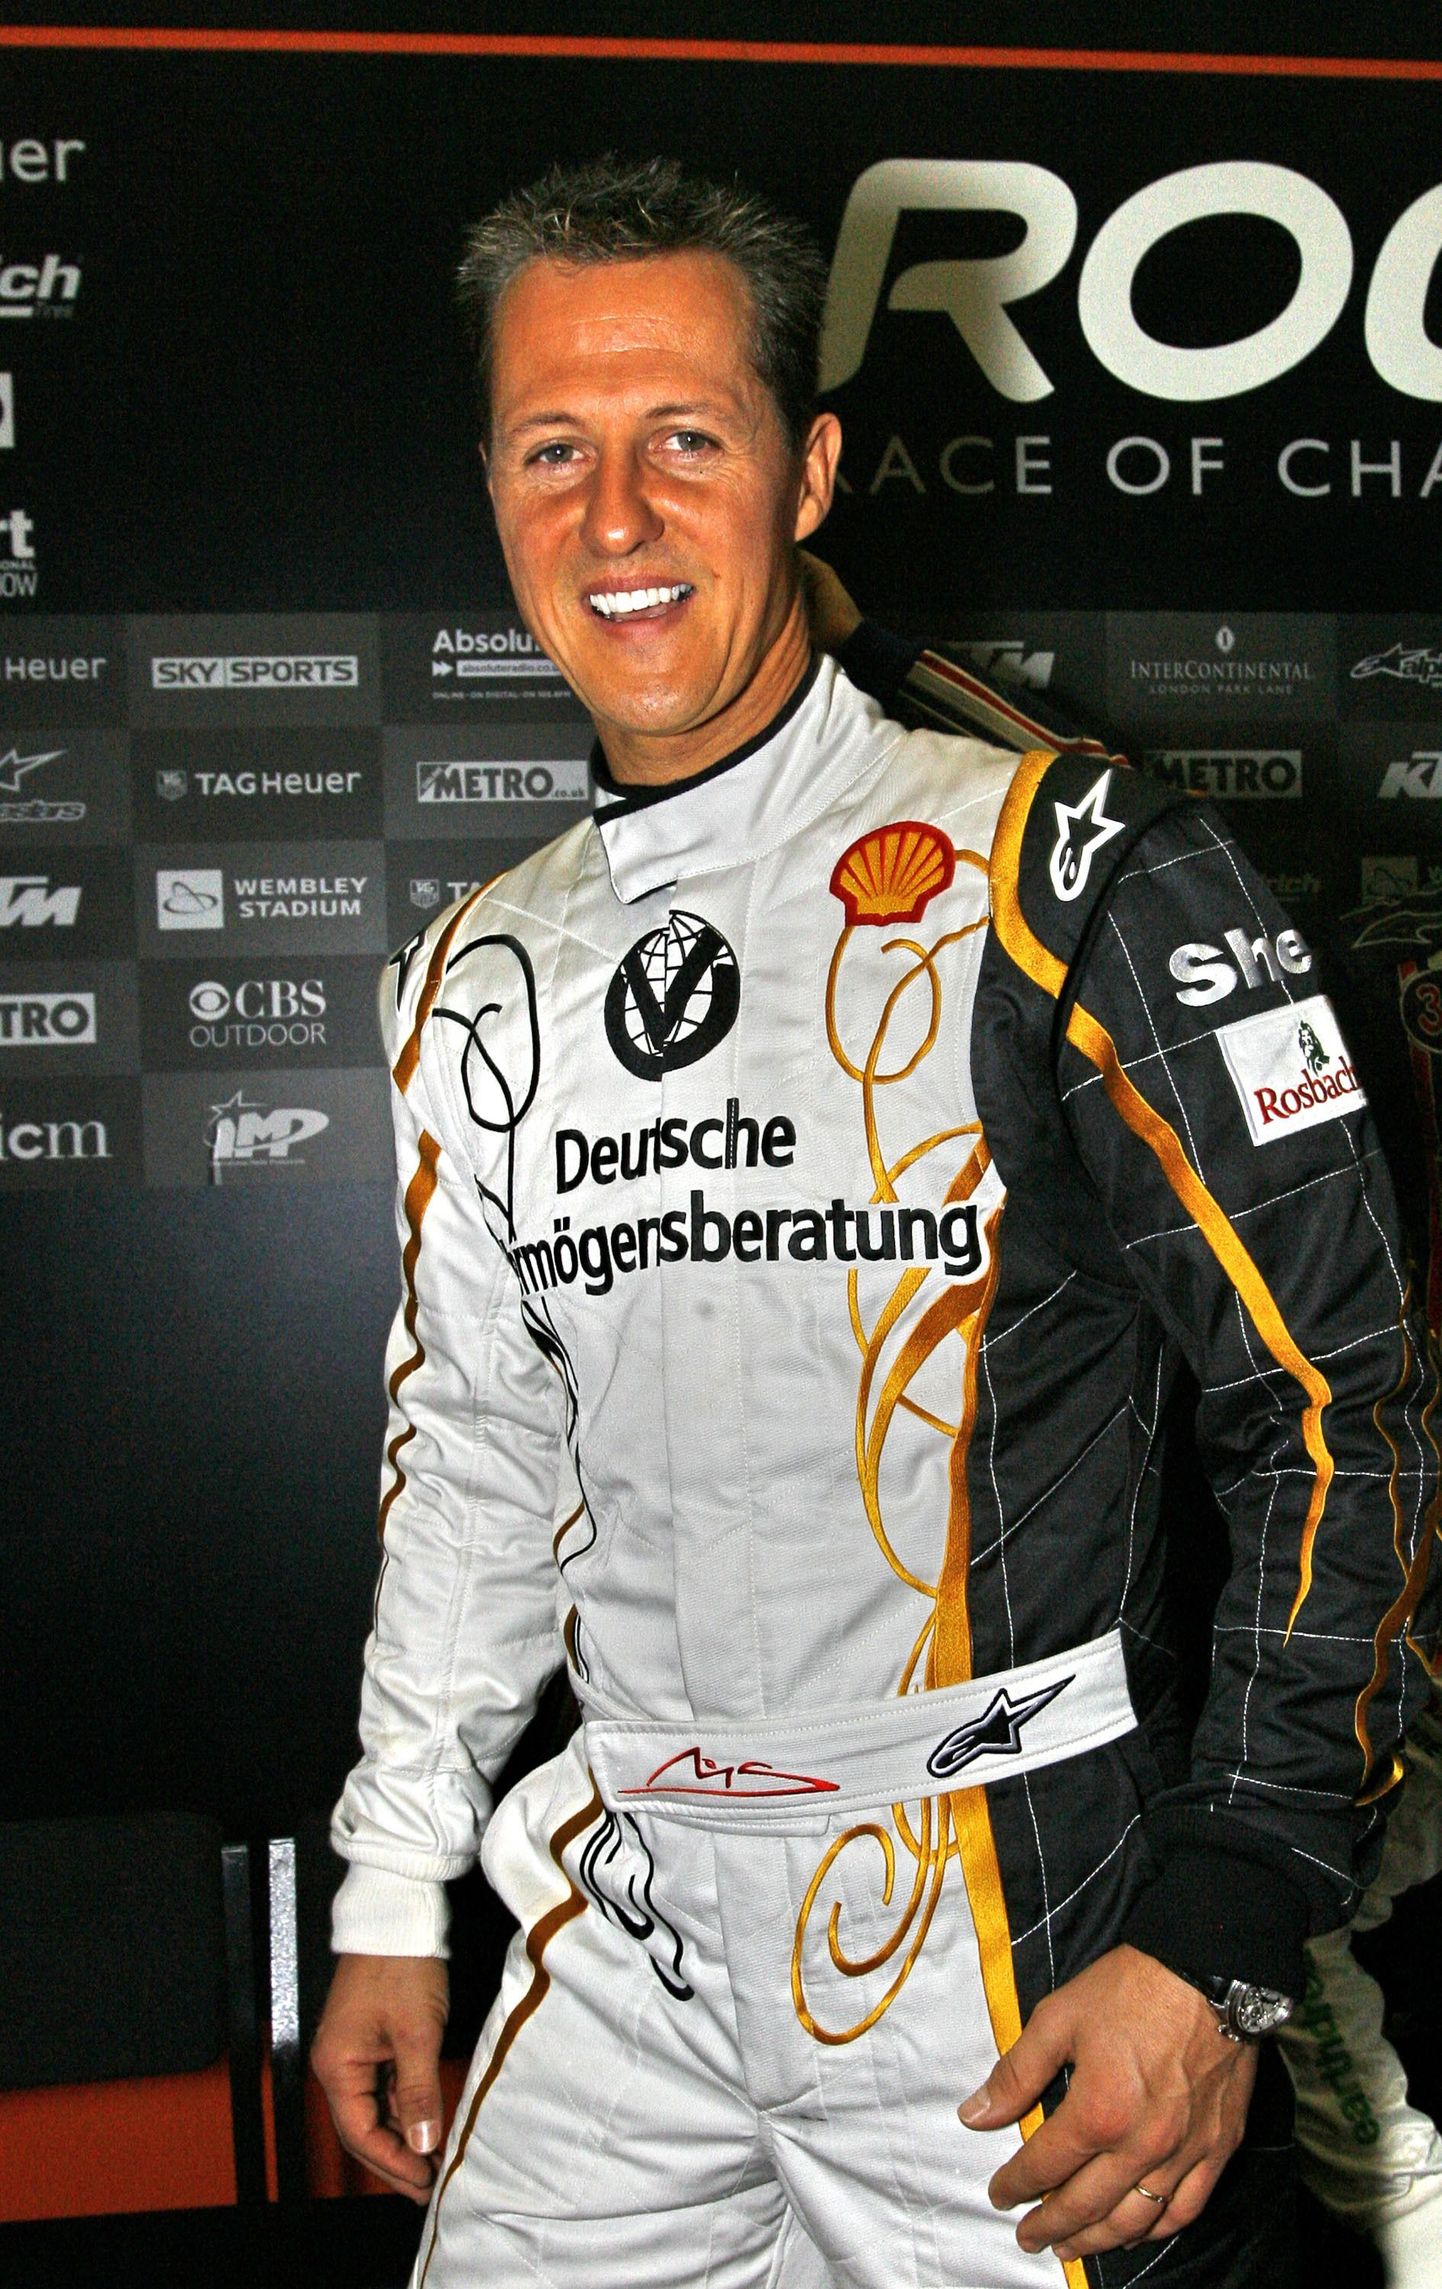 Supermeistrite võidusõit ja pildil on Michael Schumacher